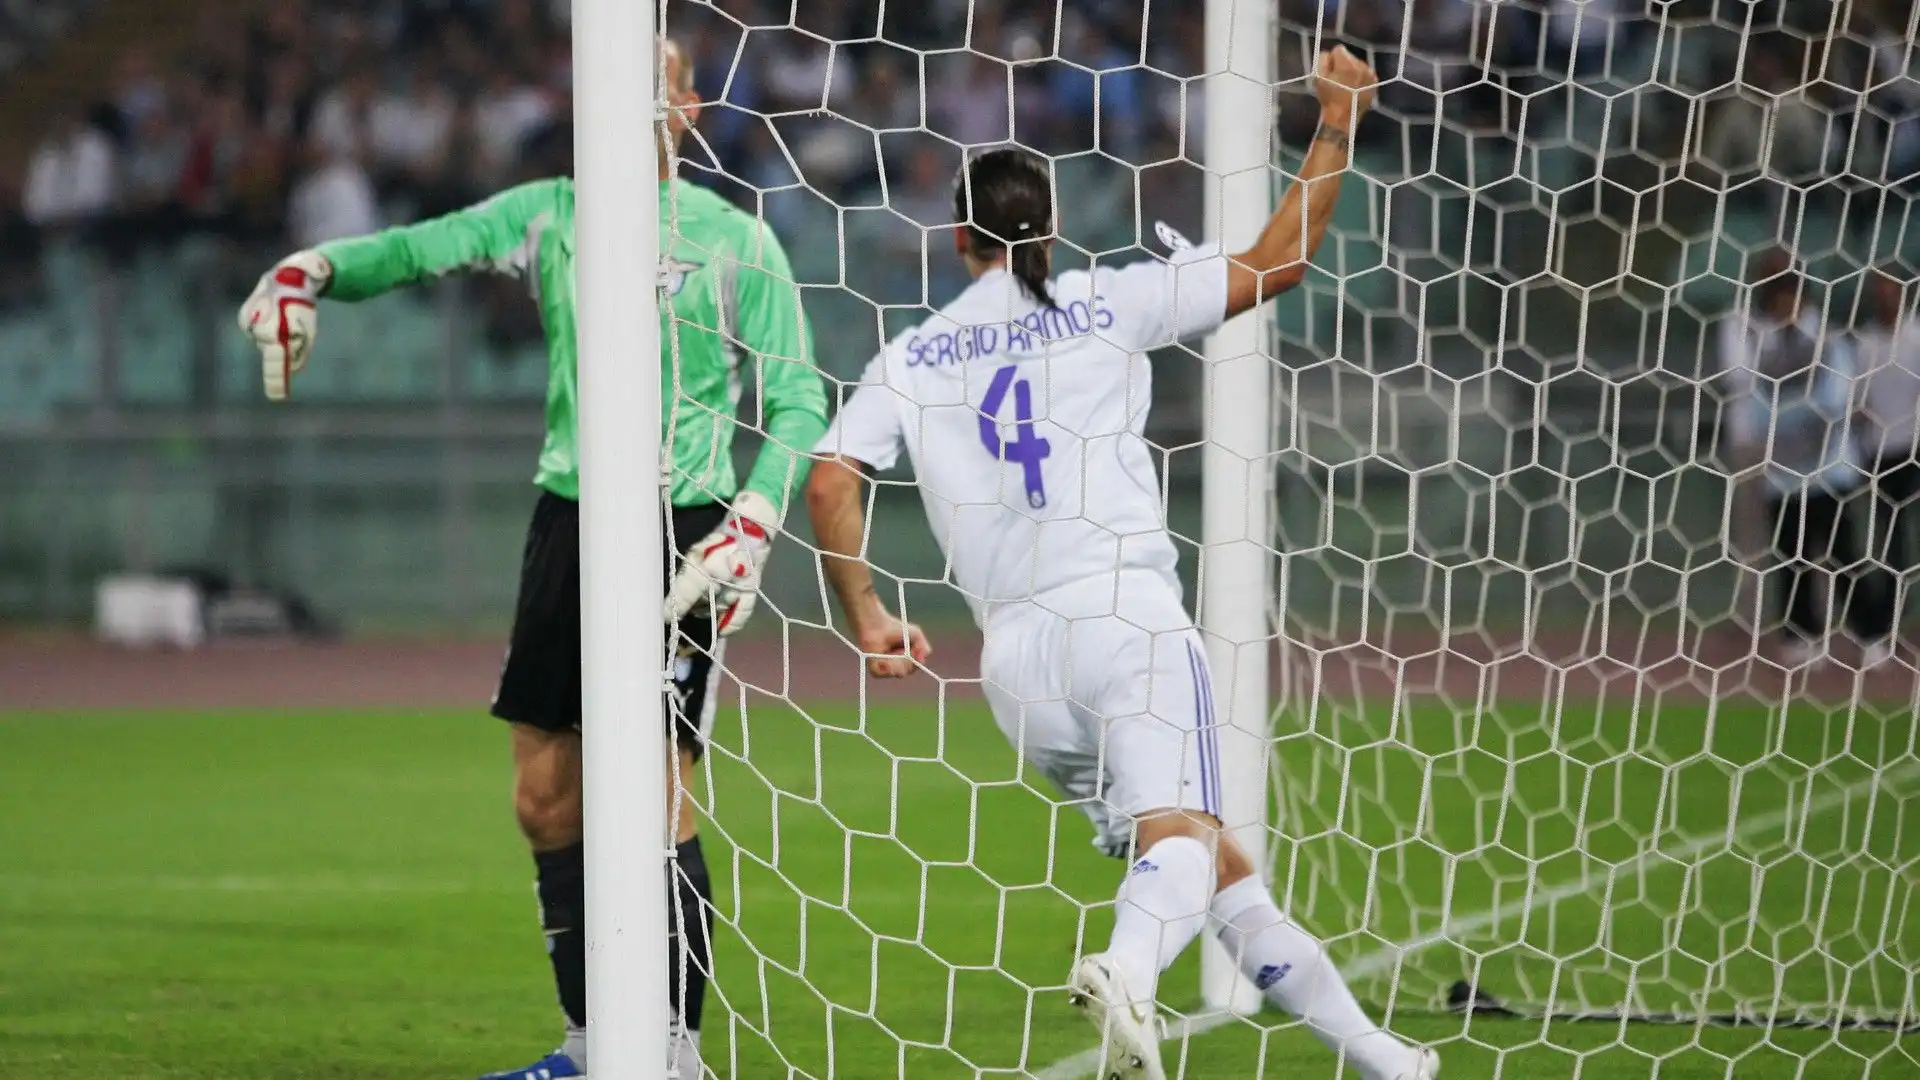 Il Real Madrid vinse la partita per 3-1 con le reti di Júlio Baptista, Raúl e Robinho. Per la Lazio segnò Pandev